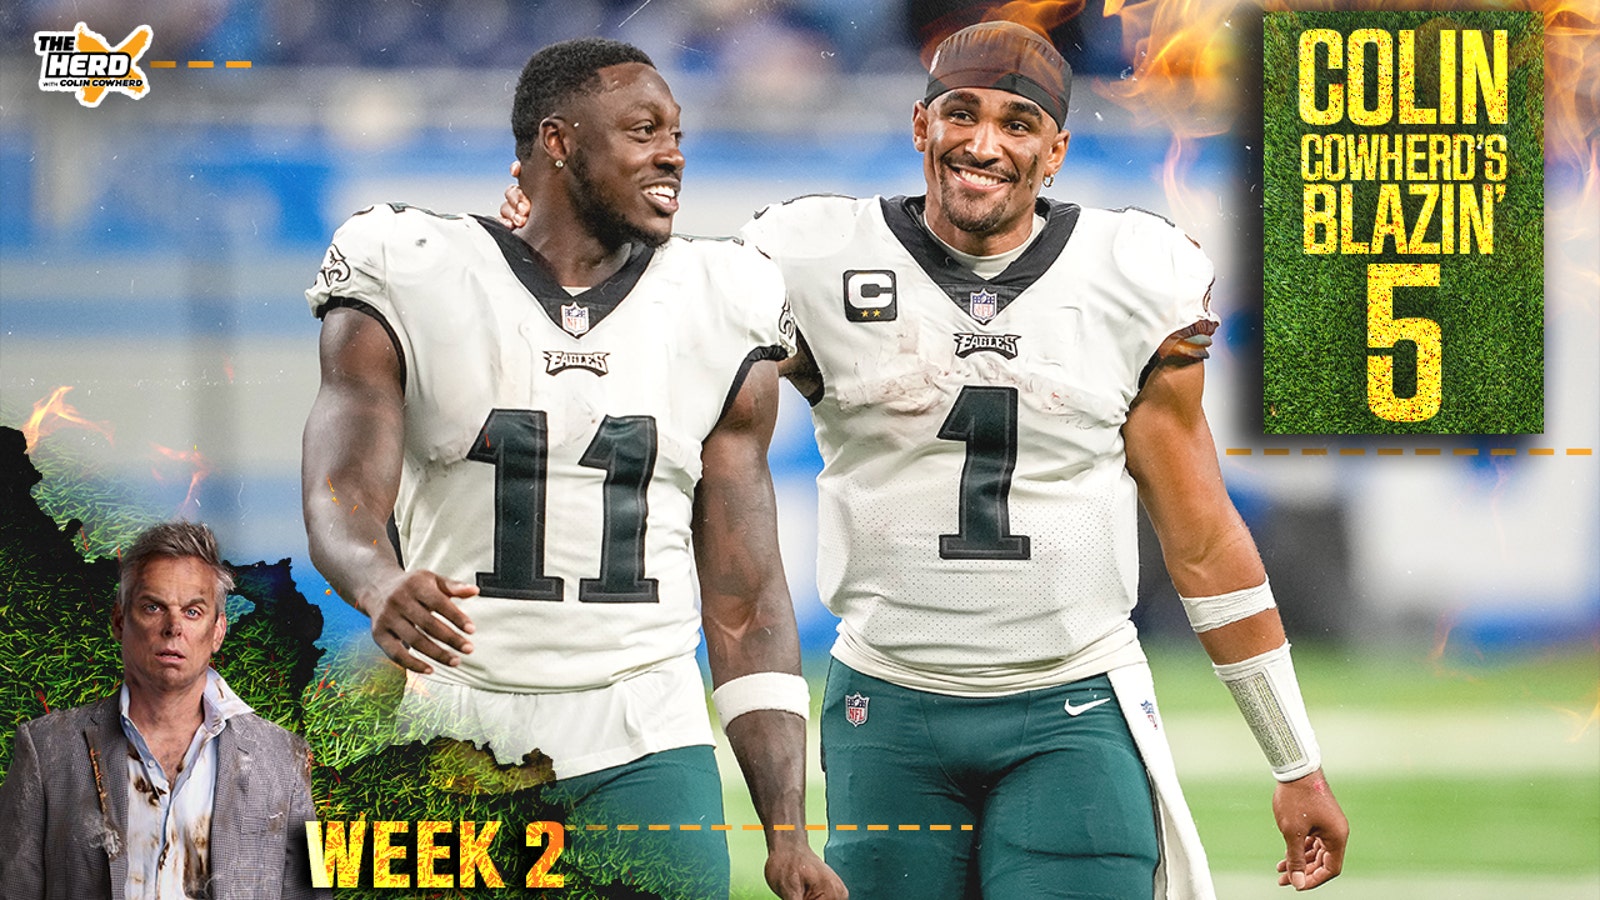 Packers, Patriots headline Cowherd's Week 2 'Blazin' 5' picks